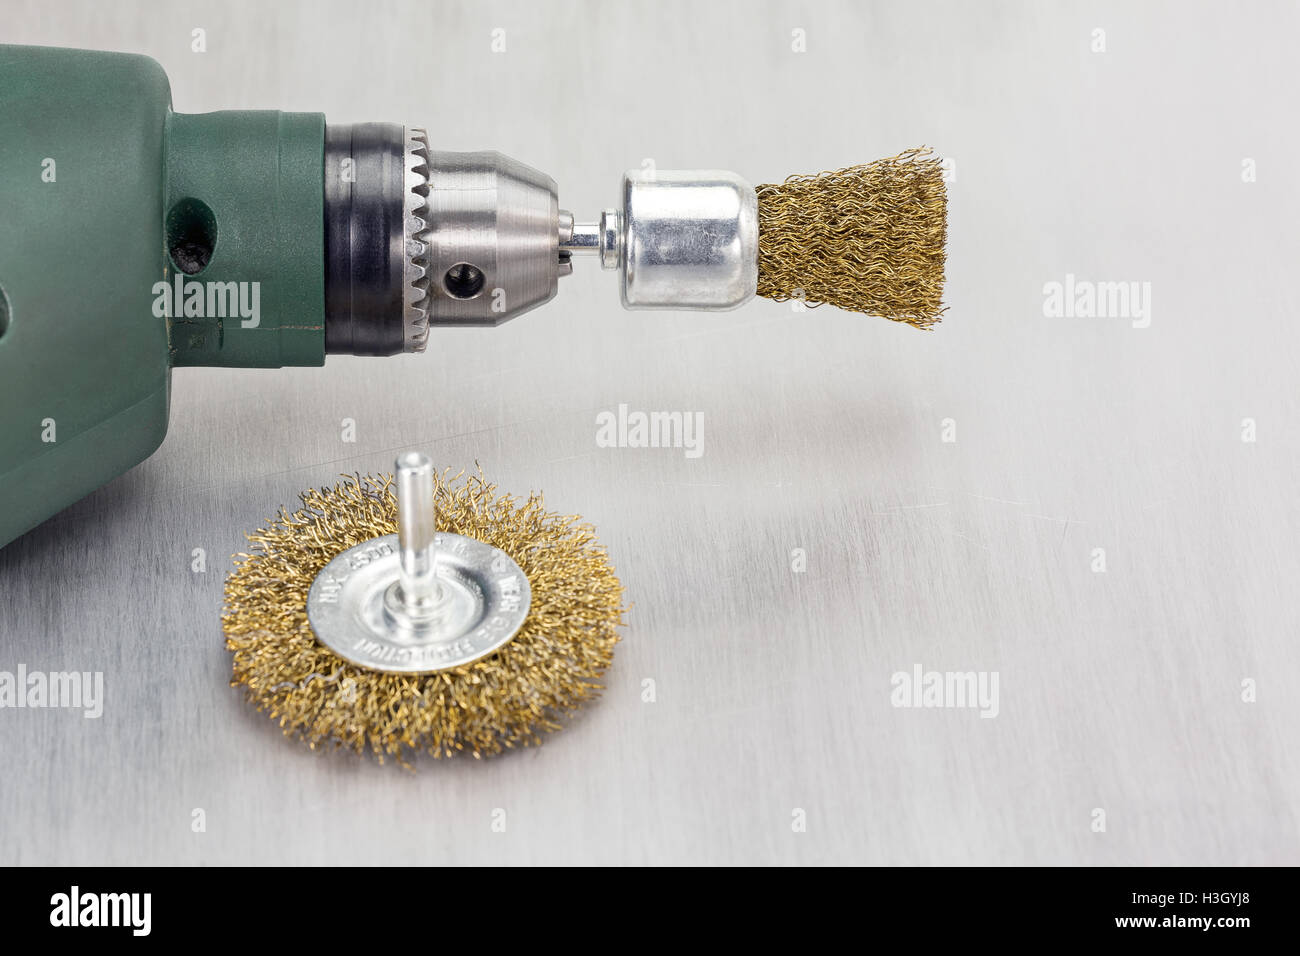 Bohrmaschine mit rotierenden Metall Bürsten auf zerkratzten Hintergrund  Stockfotografie - Alamy